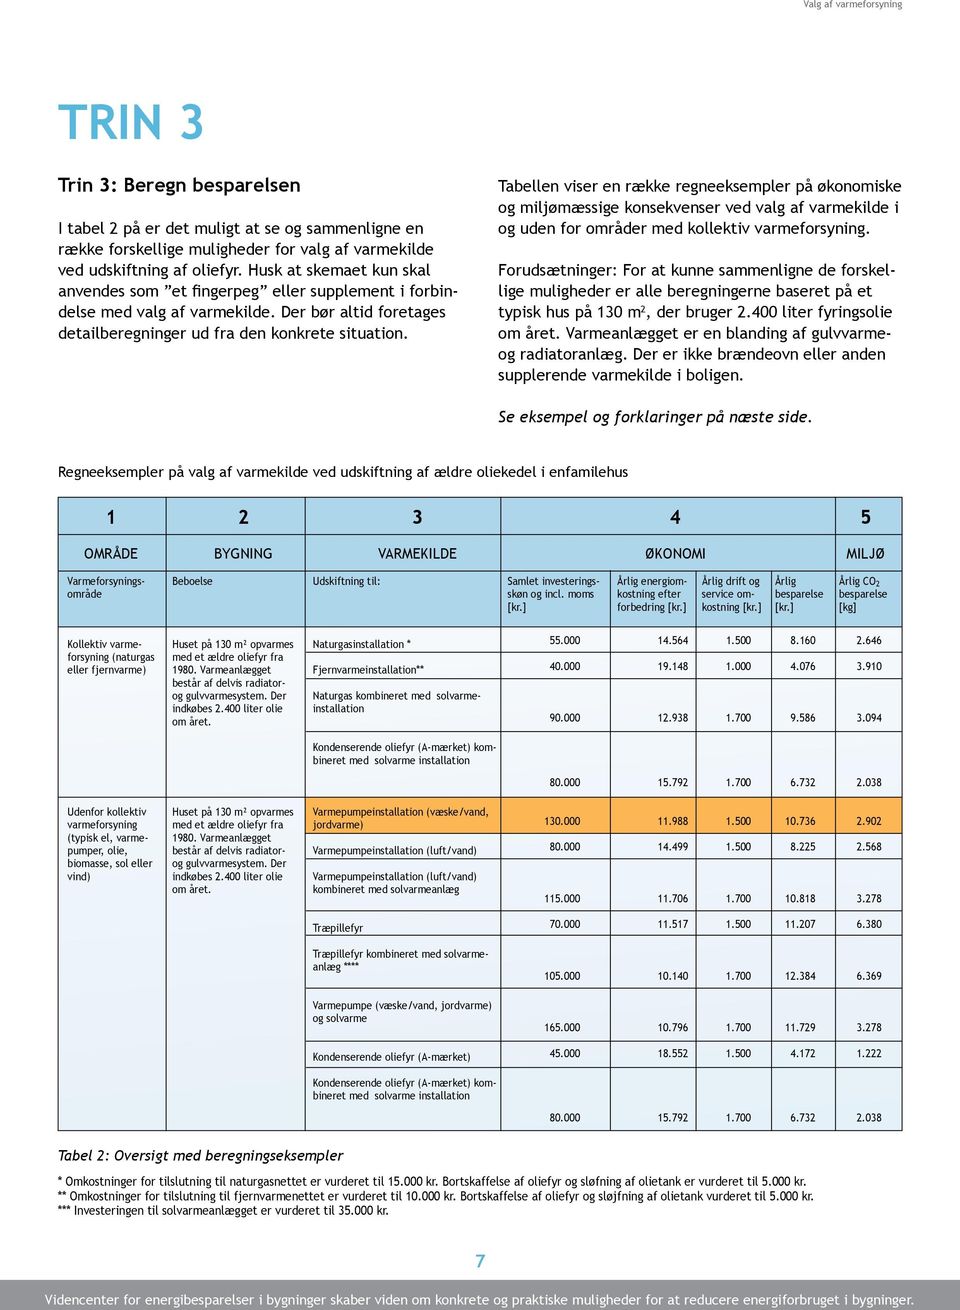 Tabellen viser en række regneeksempler på økonomiske og miljømæssige konsekvenser ved valg af varmekilde i og uden for områder med kollektiv varmeforsyning.